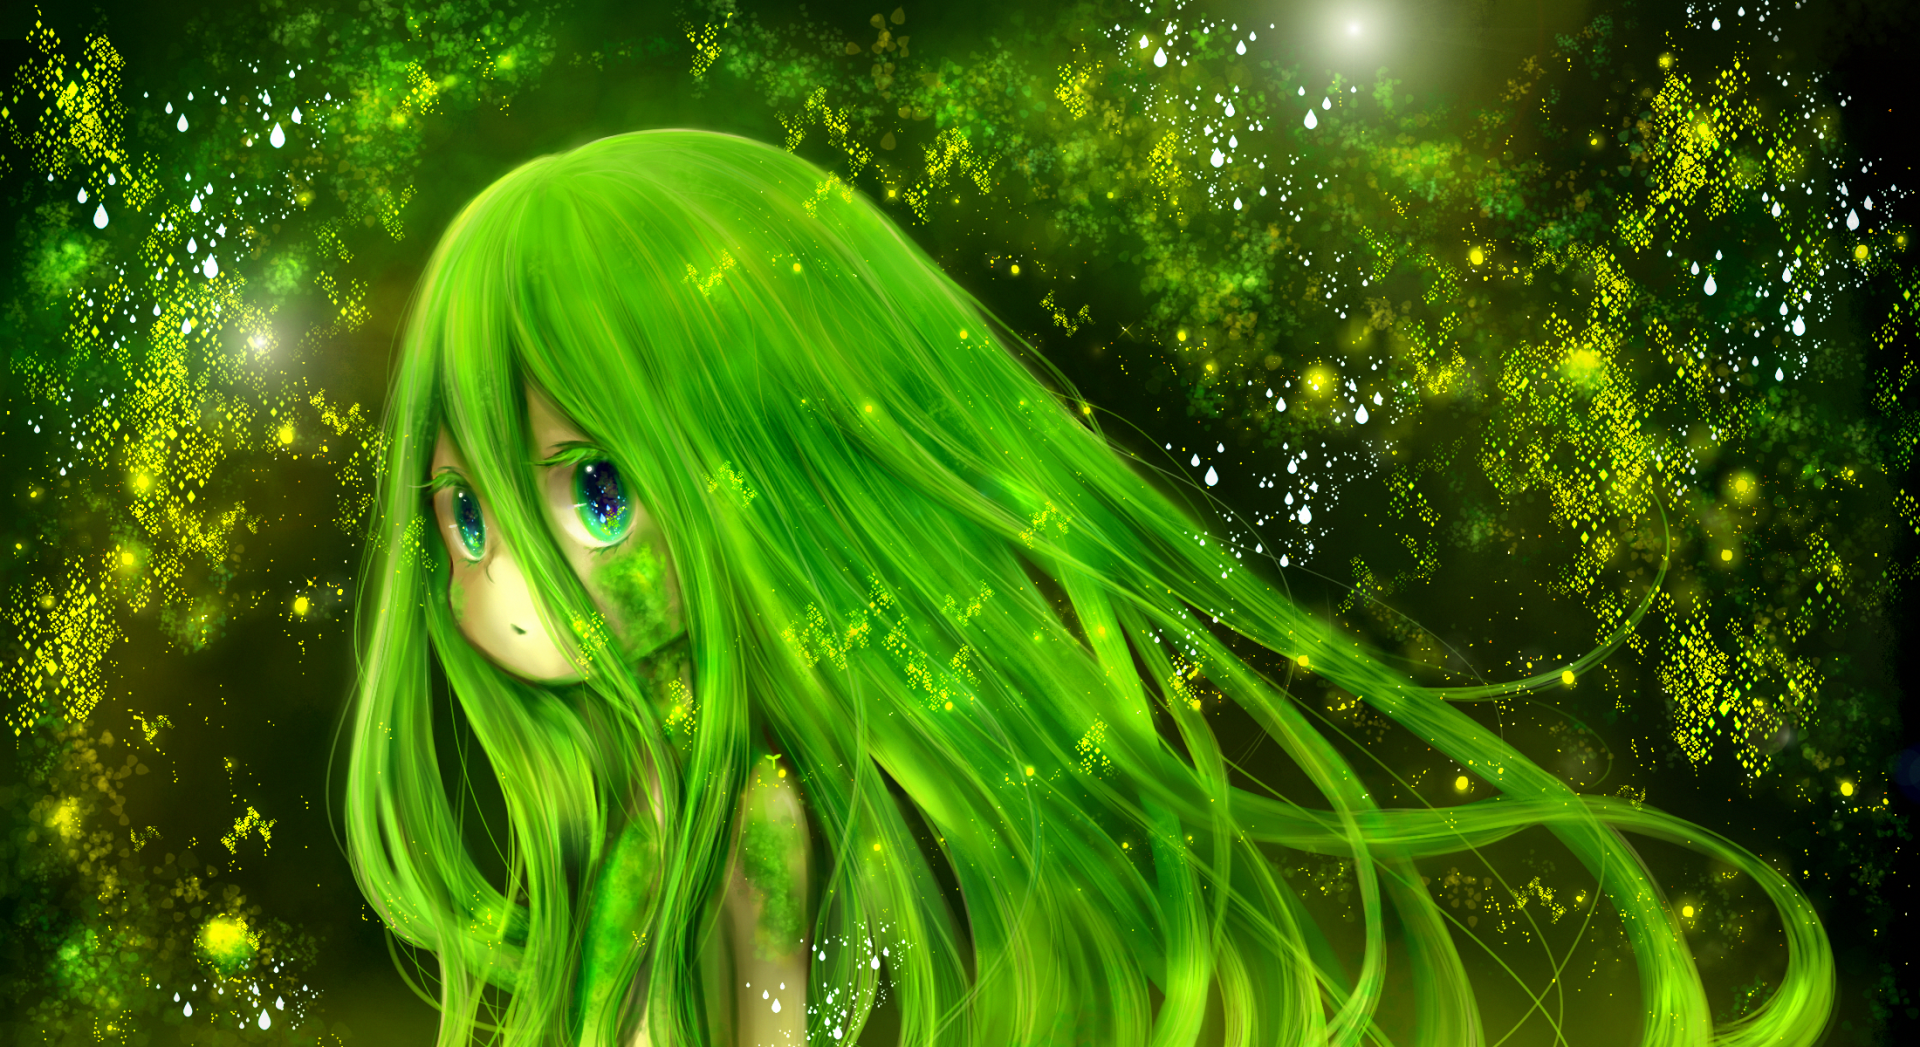 Cute anime girl with green hair 19133023 Vector Art at Vecteezy